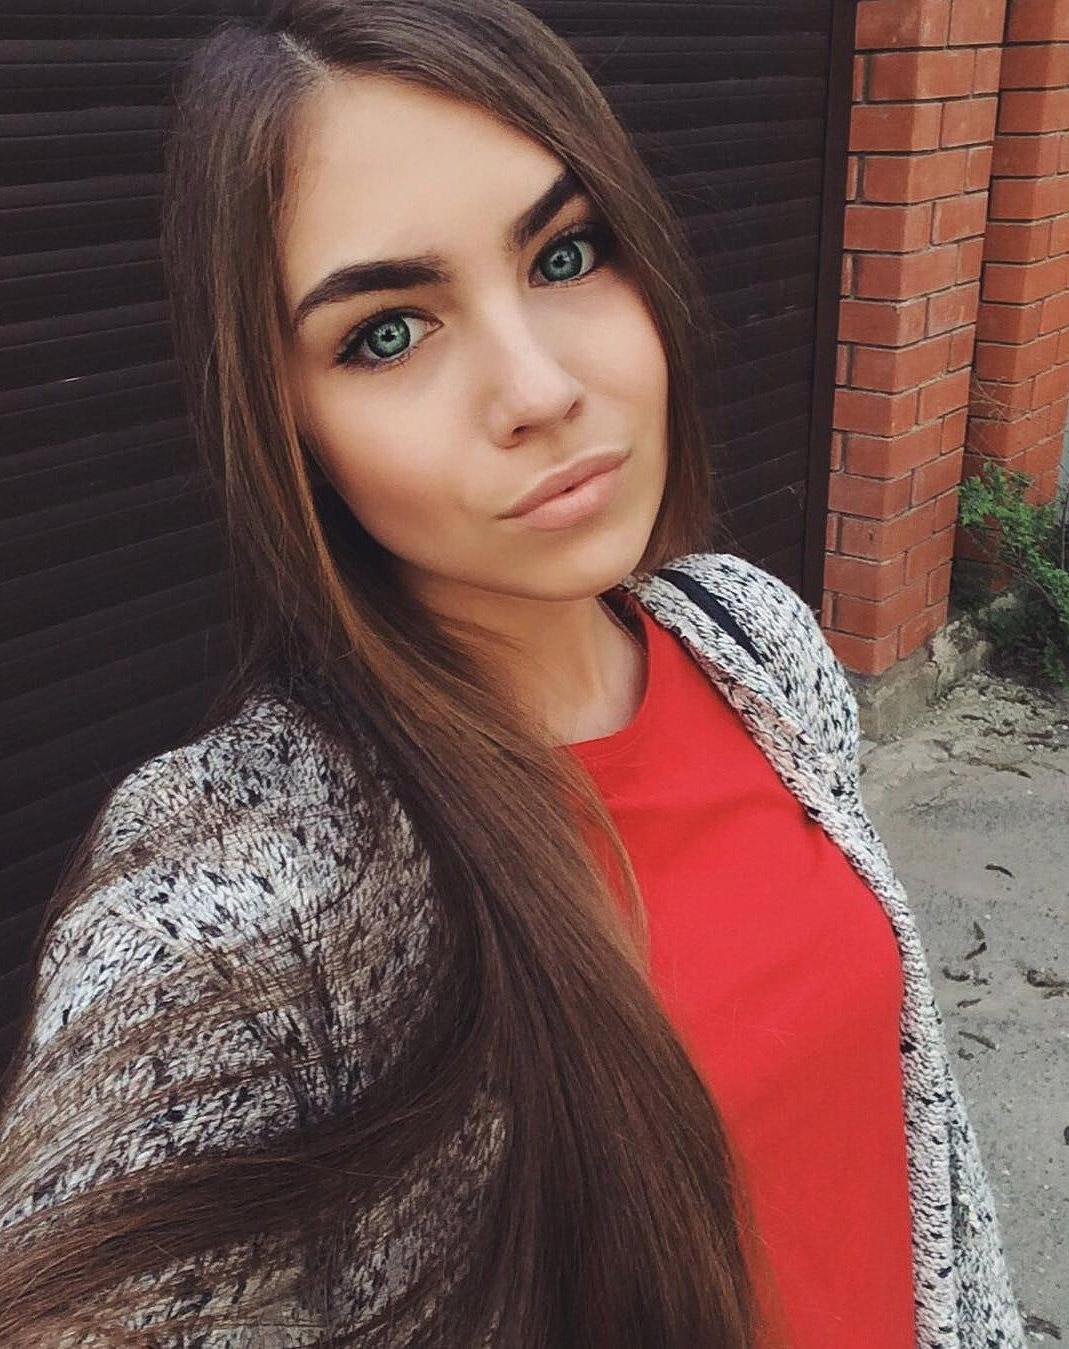 Девка 20 лет. Красивые русские девушки 20 лет. Обычные красивые девушки.